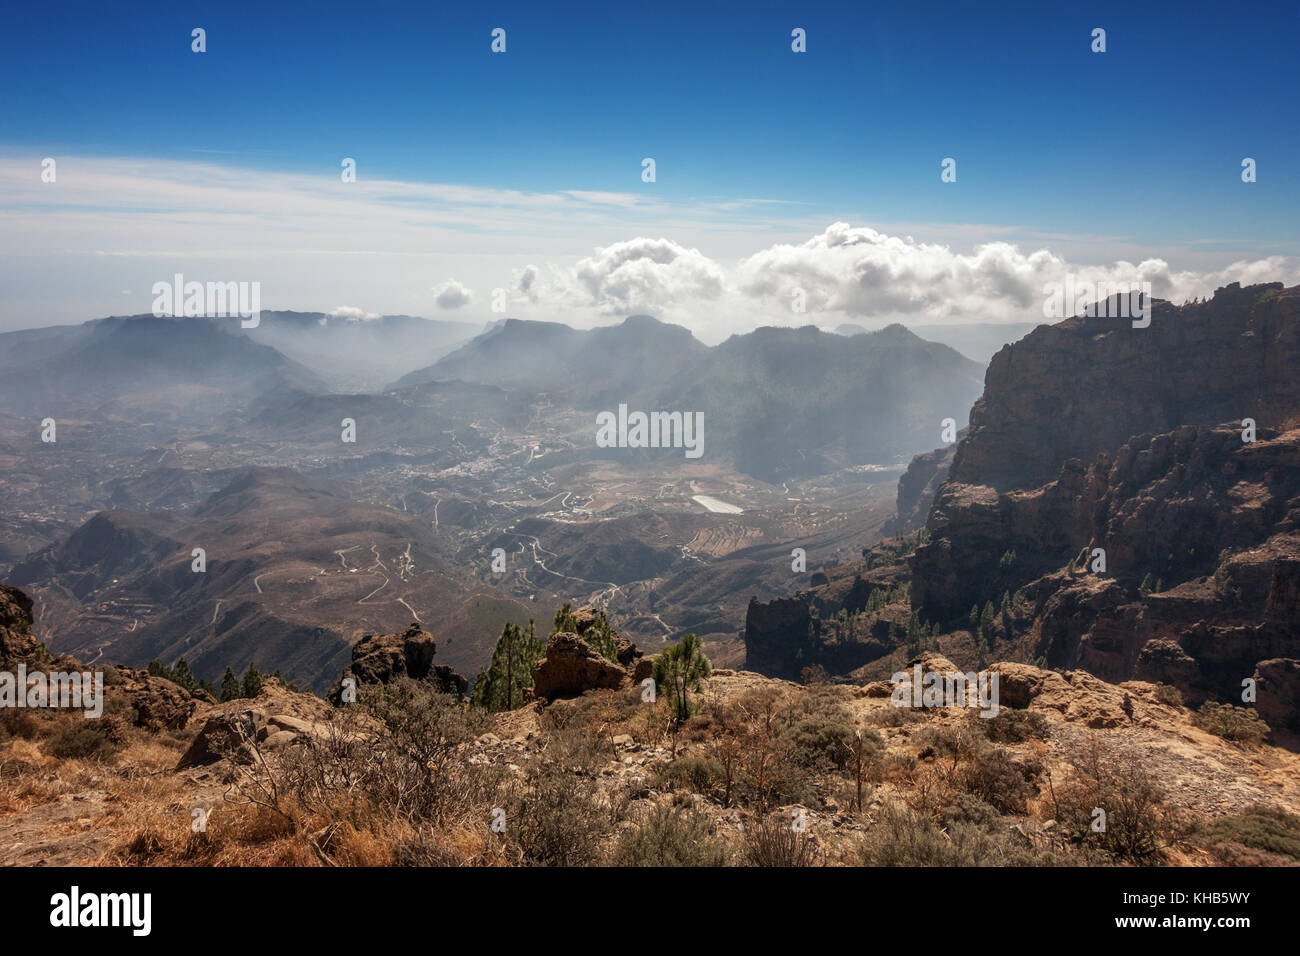 Die Berge im Inland von Pico de las Nieves (Gipfel von Gran Canaria), San Bartolome, Kanarische Inseln, Spanien Stockfoto